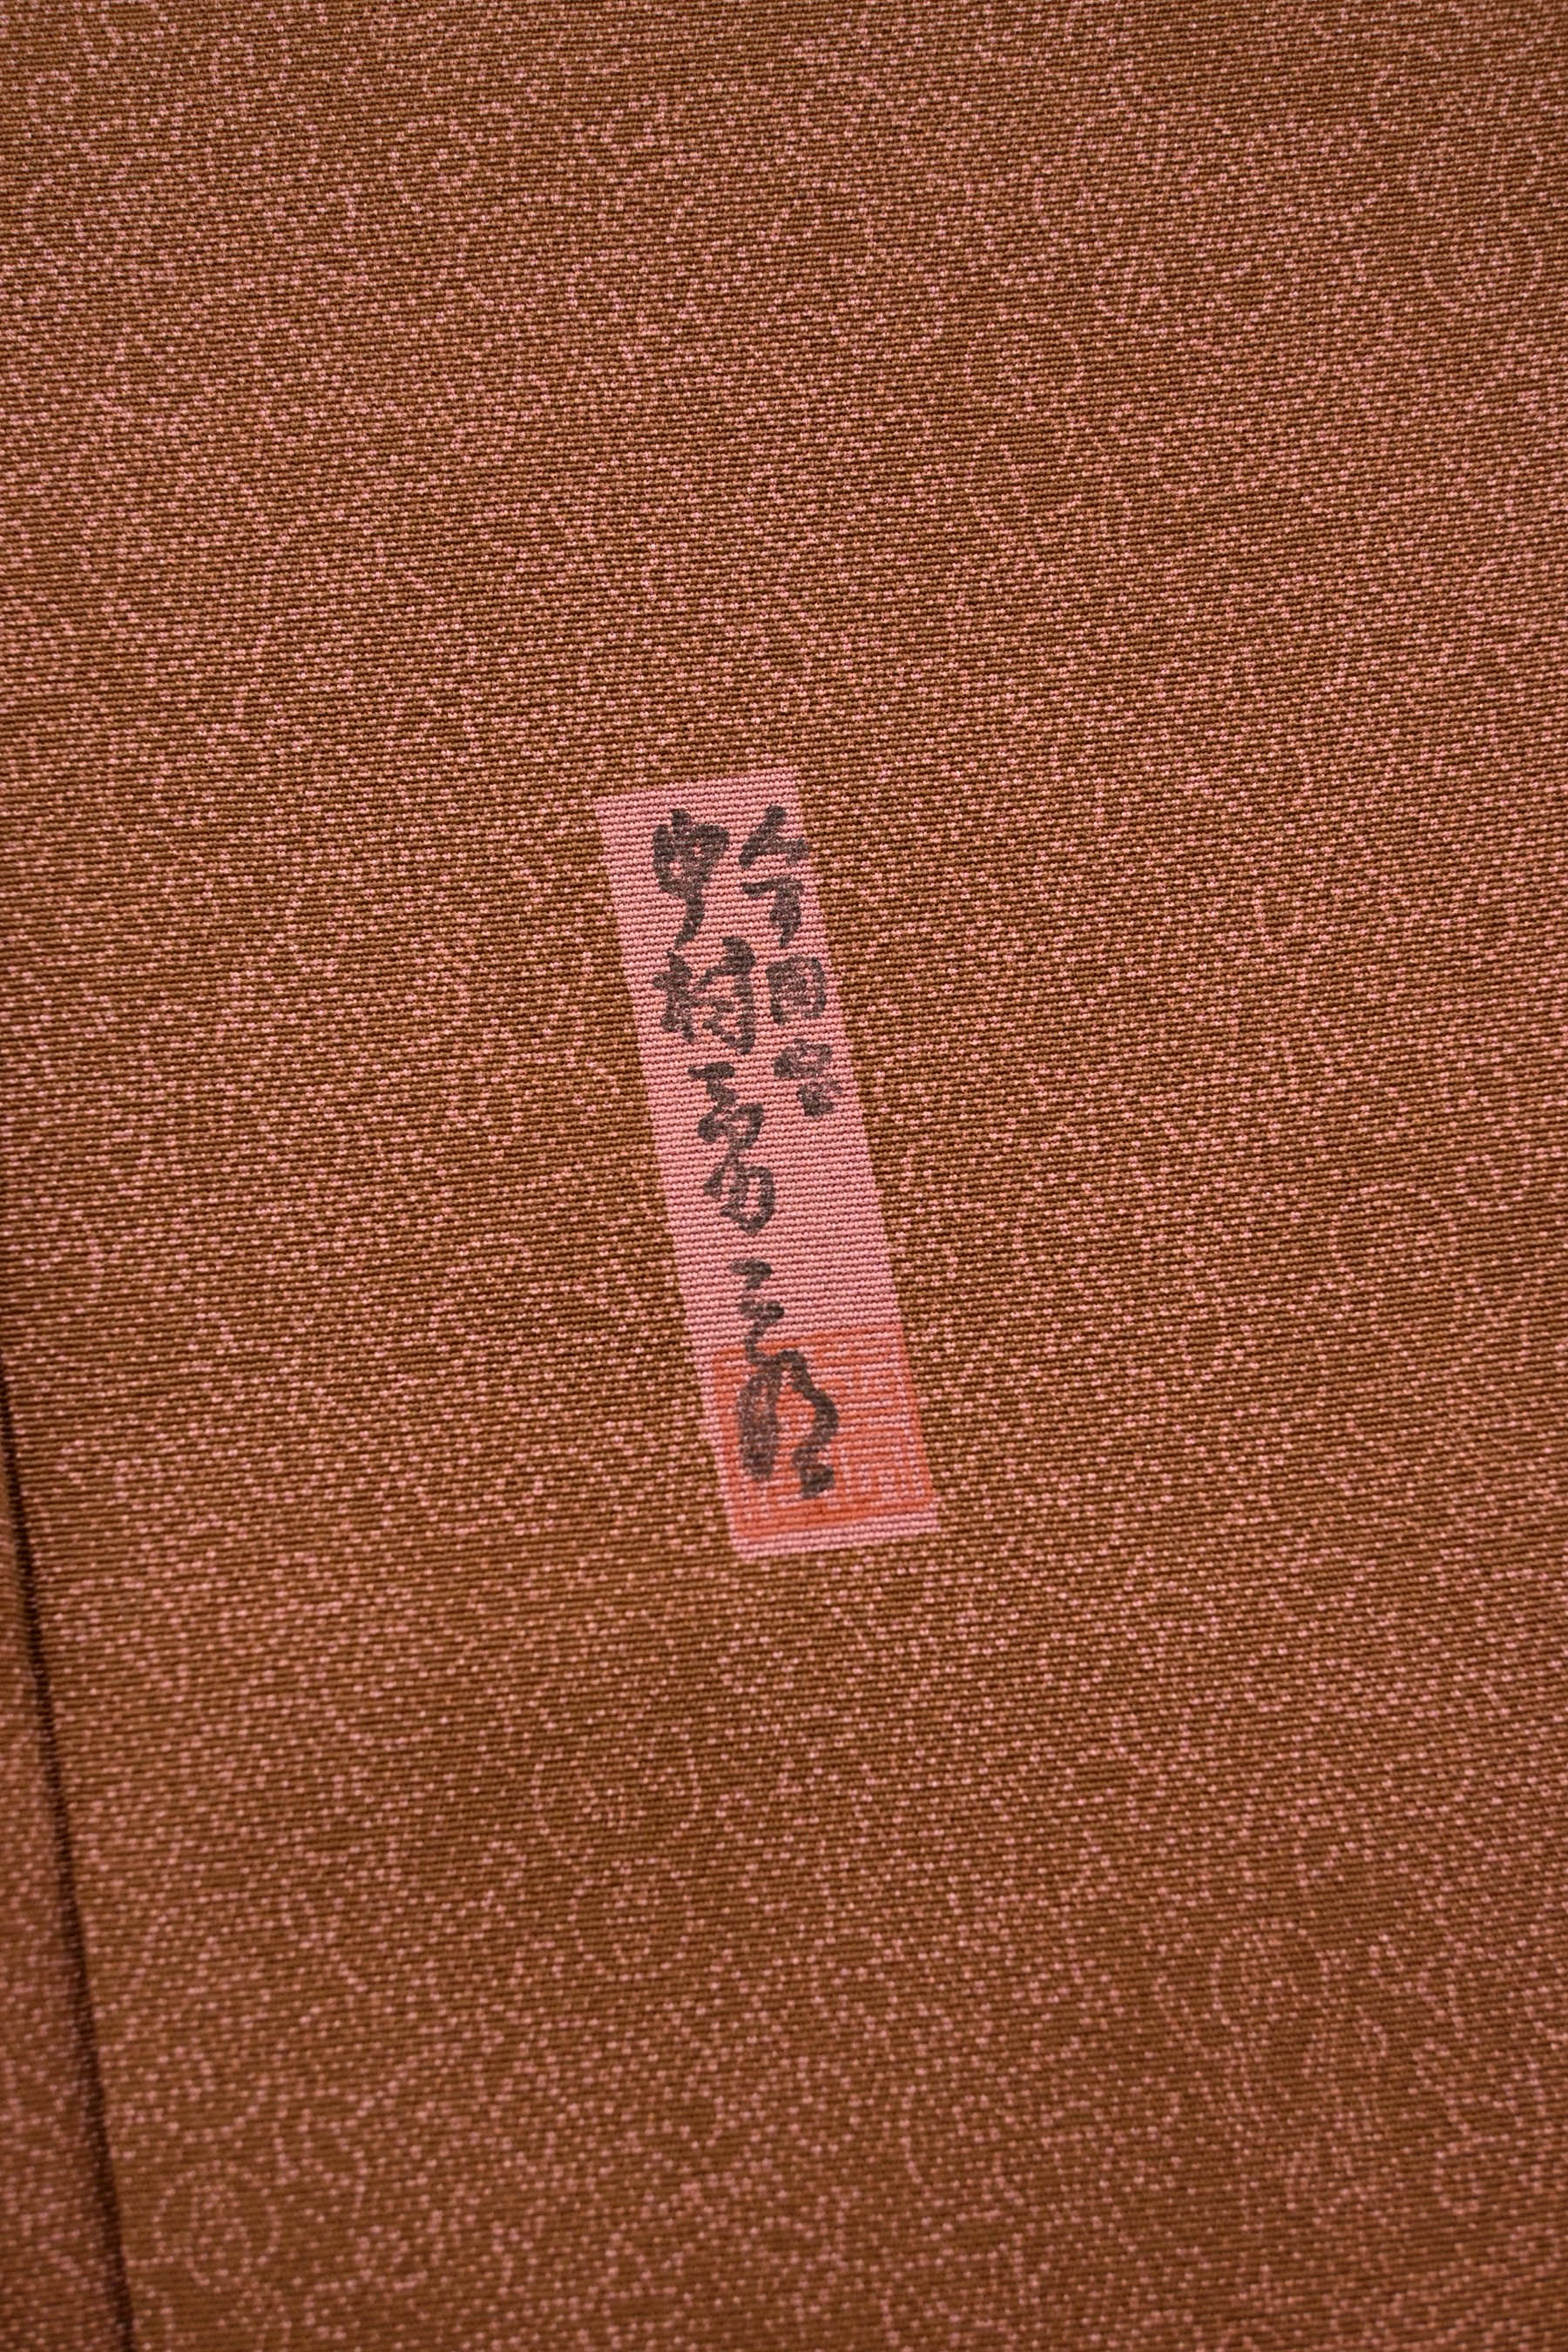 中村勇二郎 重要無形文化財保持者 人間国宝 伊勢型紙道具彫師 江戸小紋